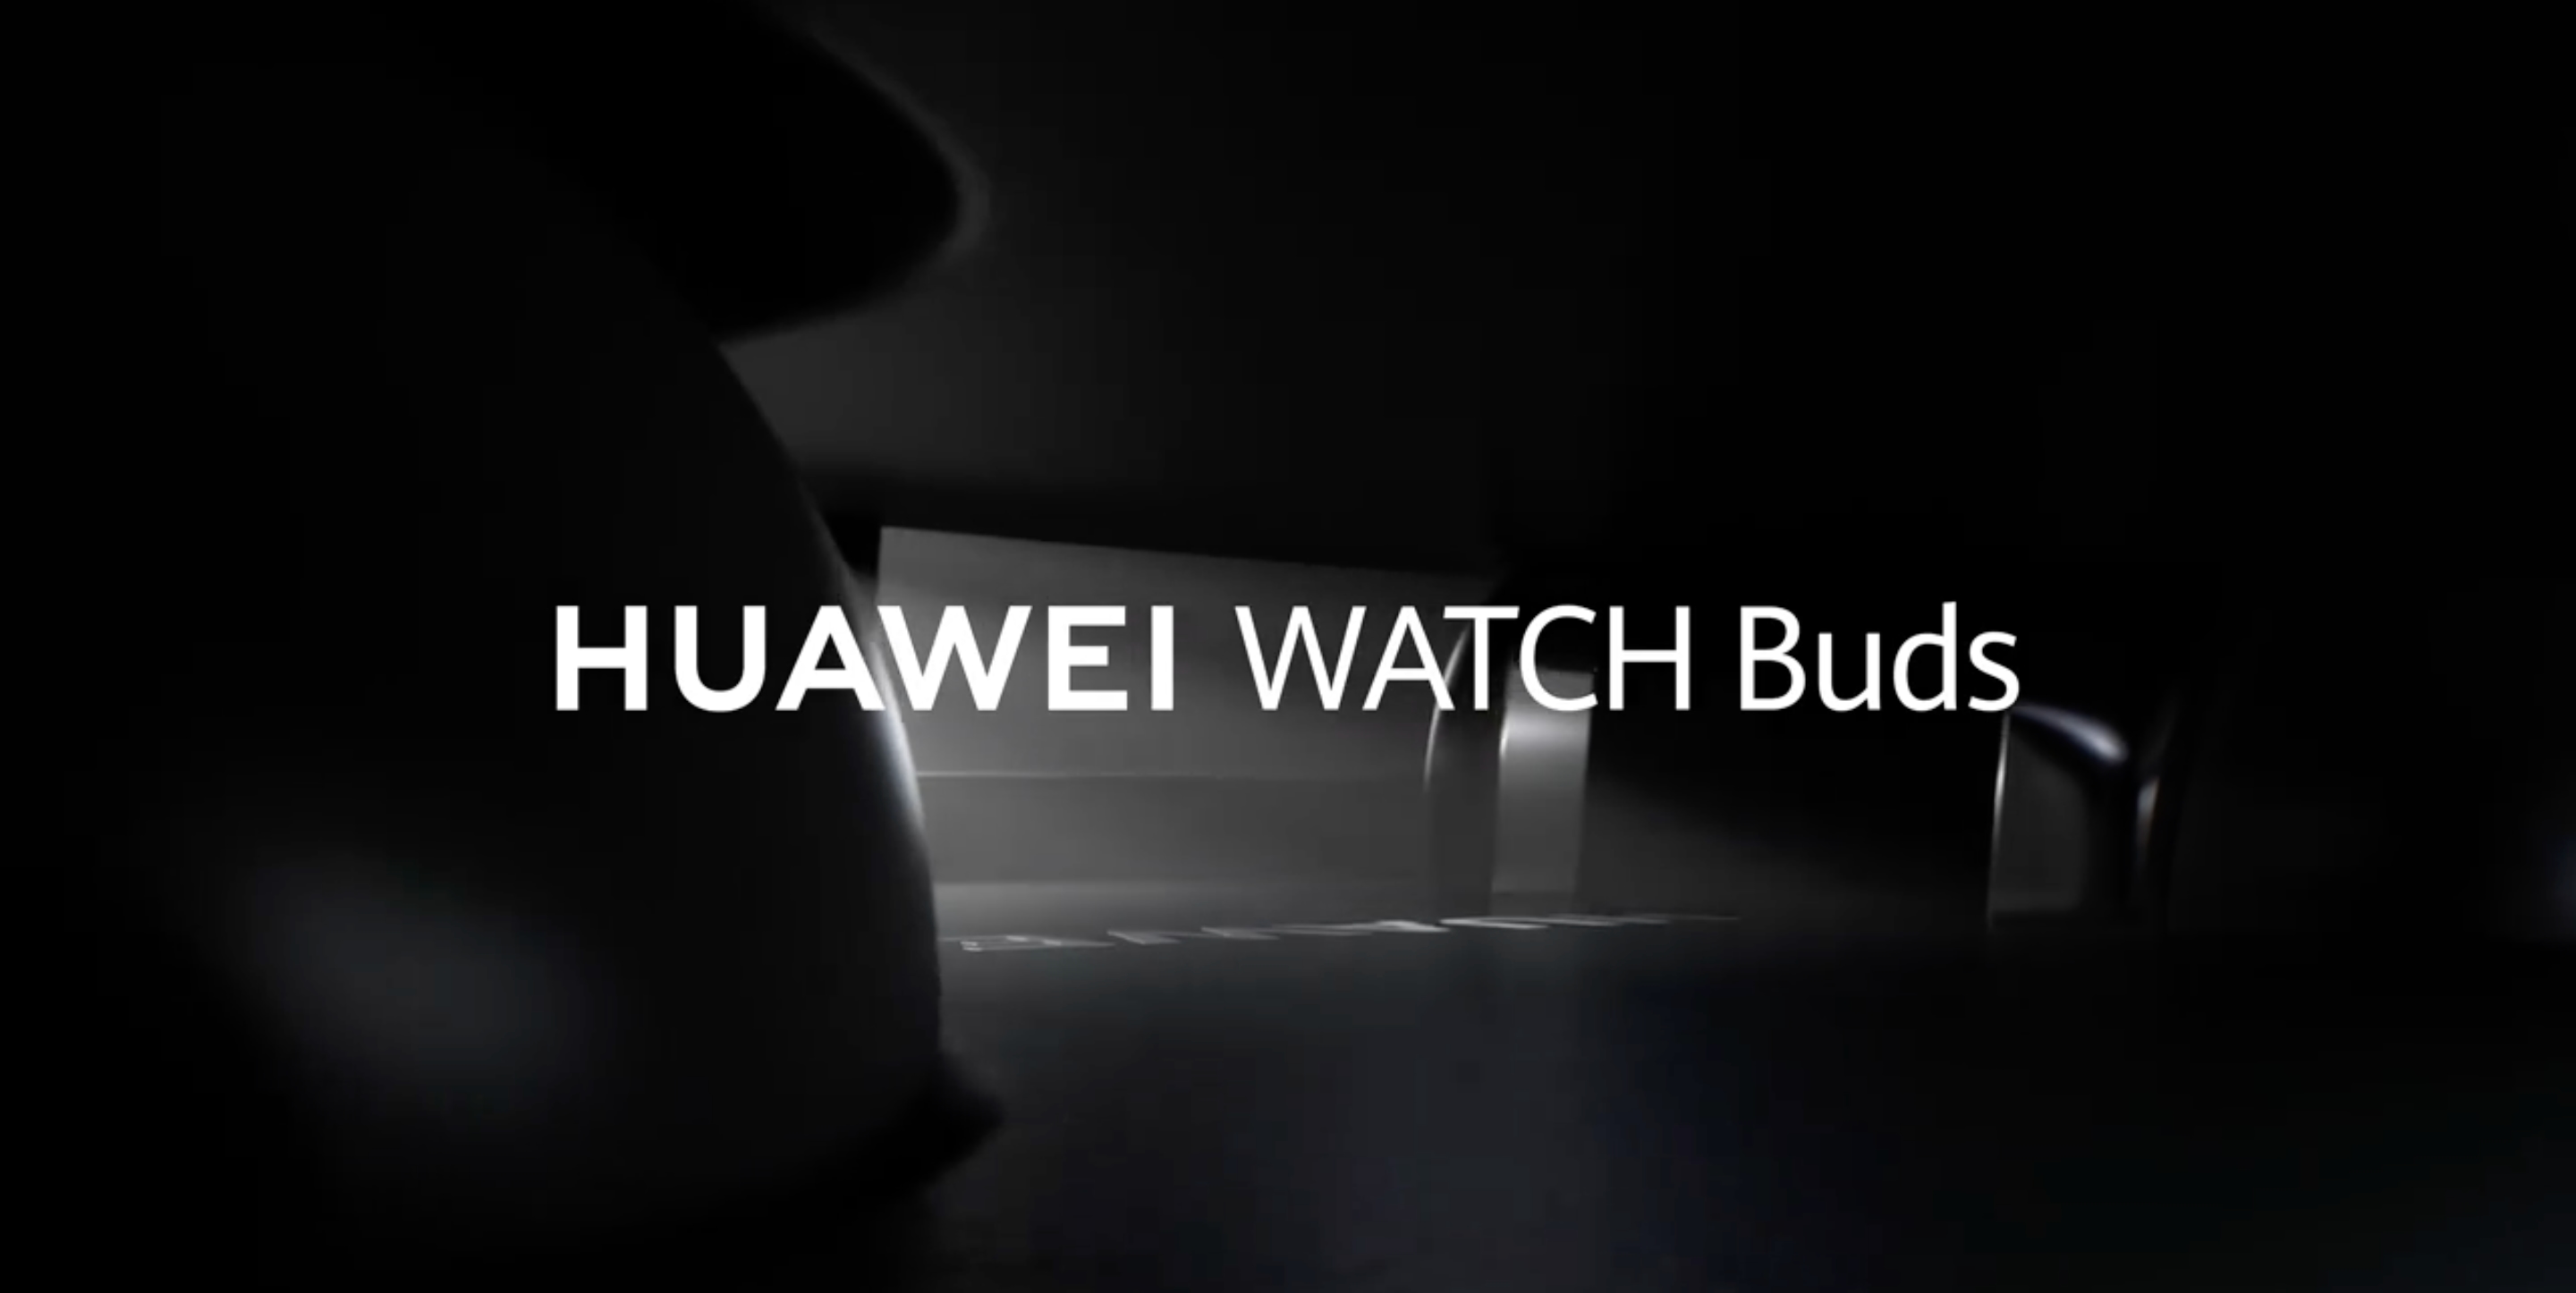 To już oficjalne: smartwatch Huawei Watch Buds z wbudowanymi słuchawkami TWS trafi do sprzedaży 2 grudnia